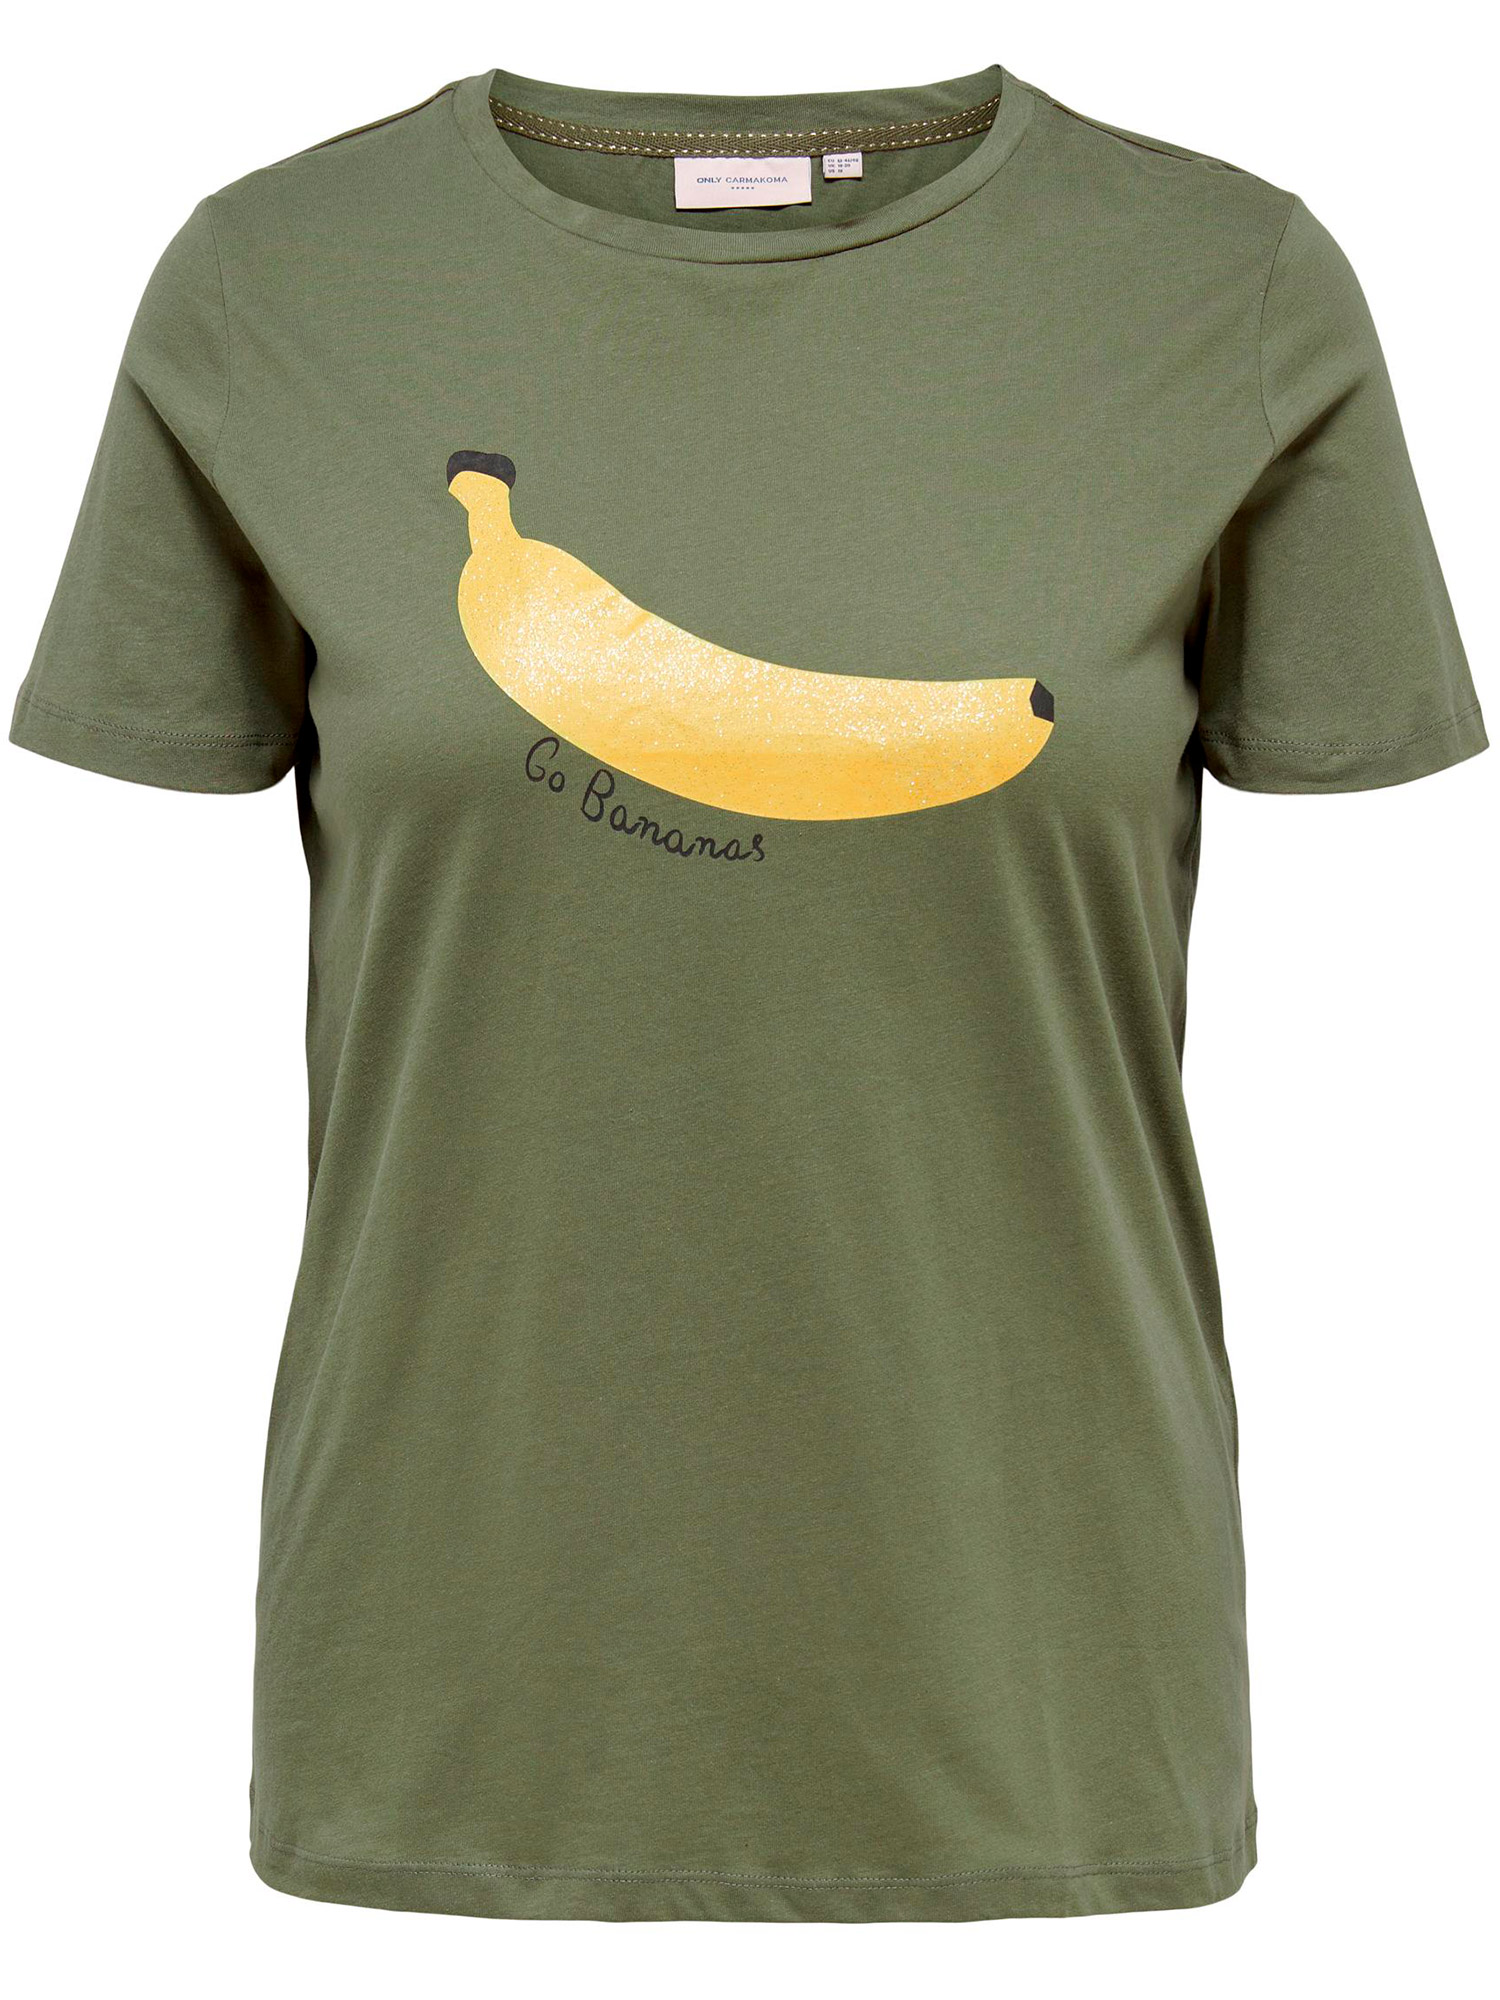 Carsola - Grønn bomulls t-skjorte med print fra Only Carmakoma